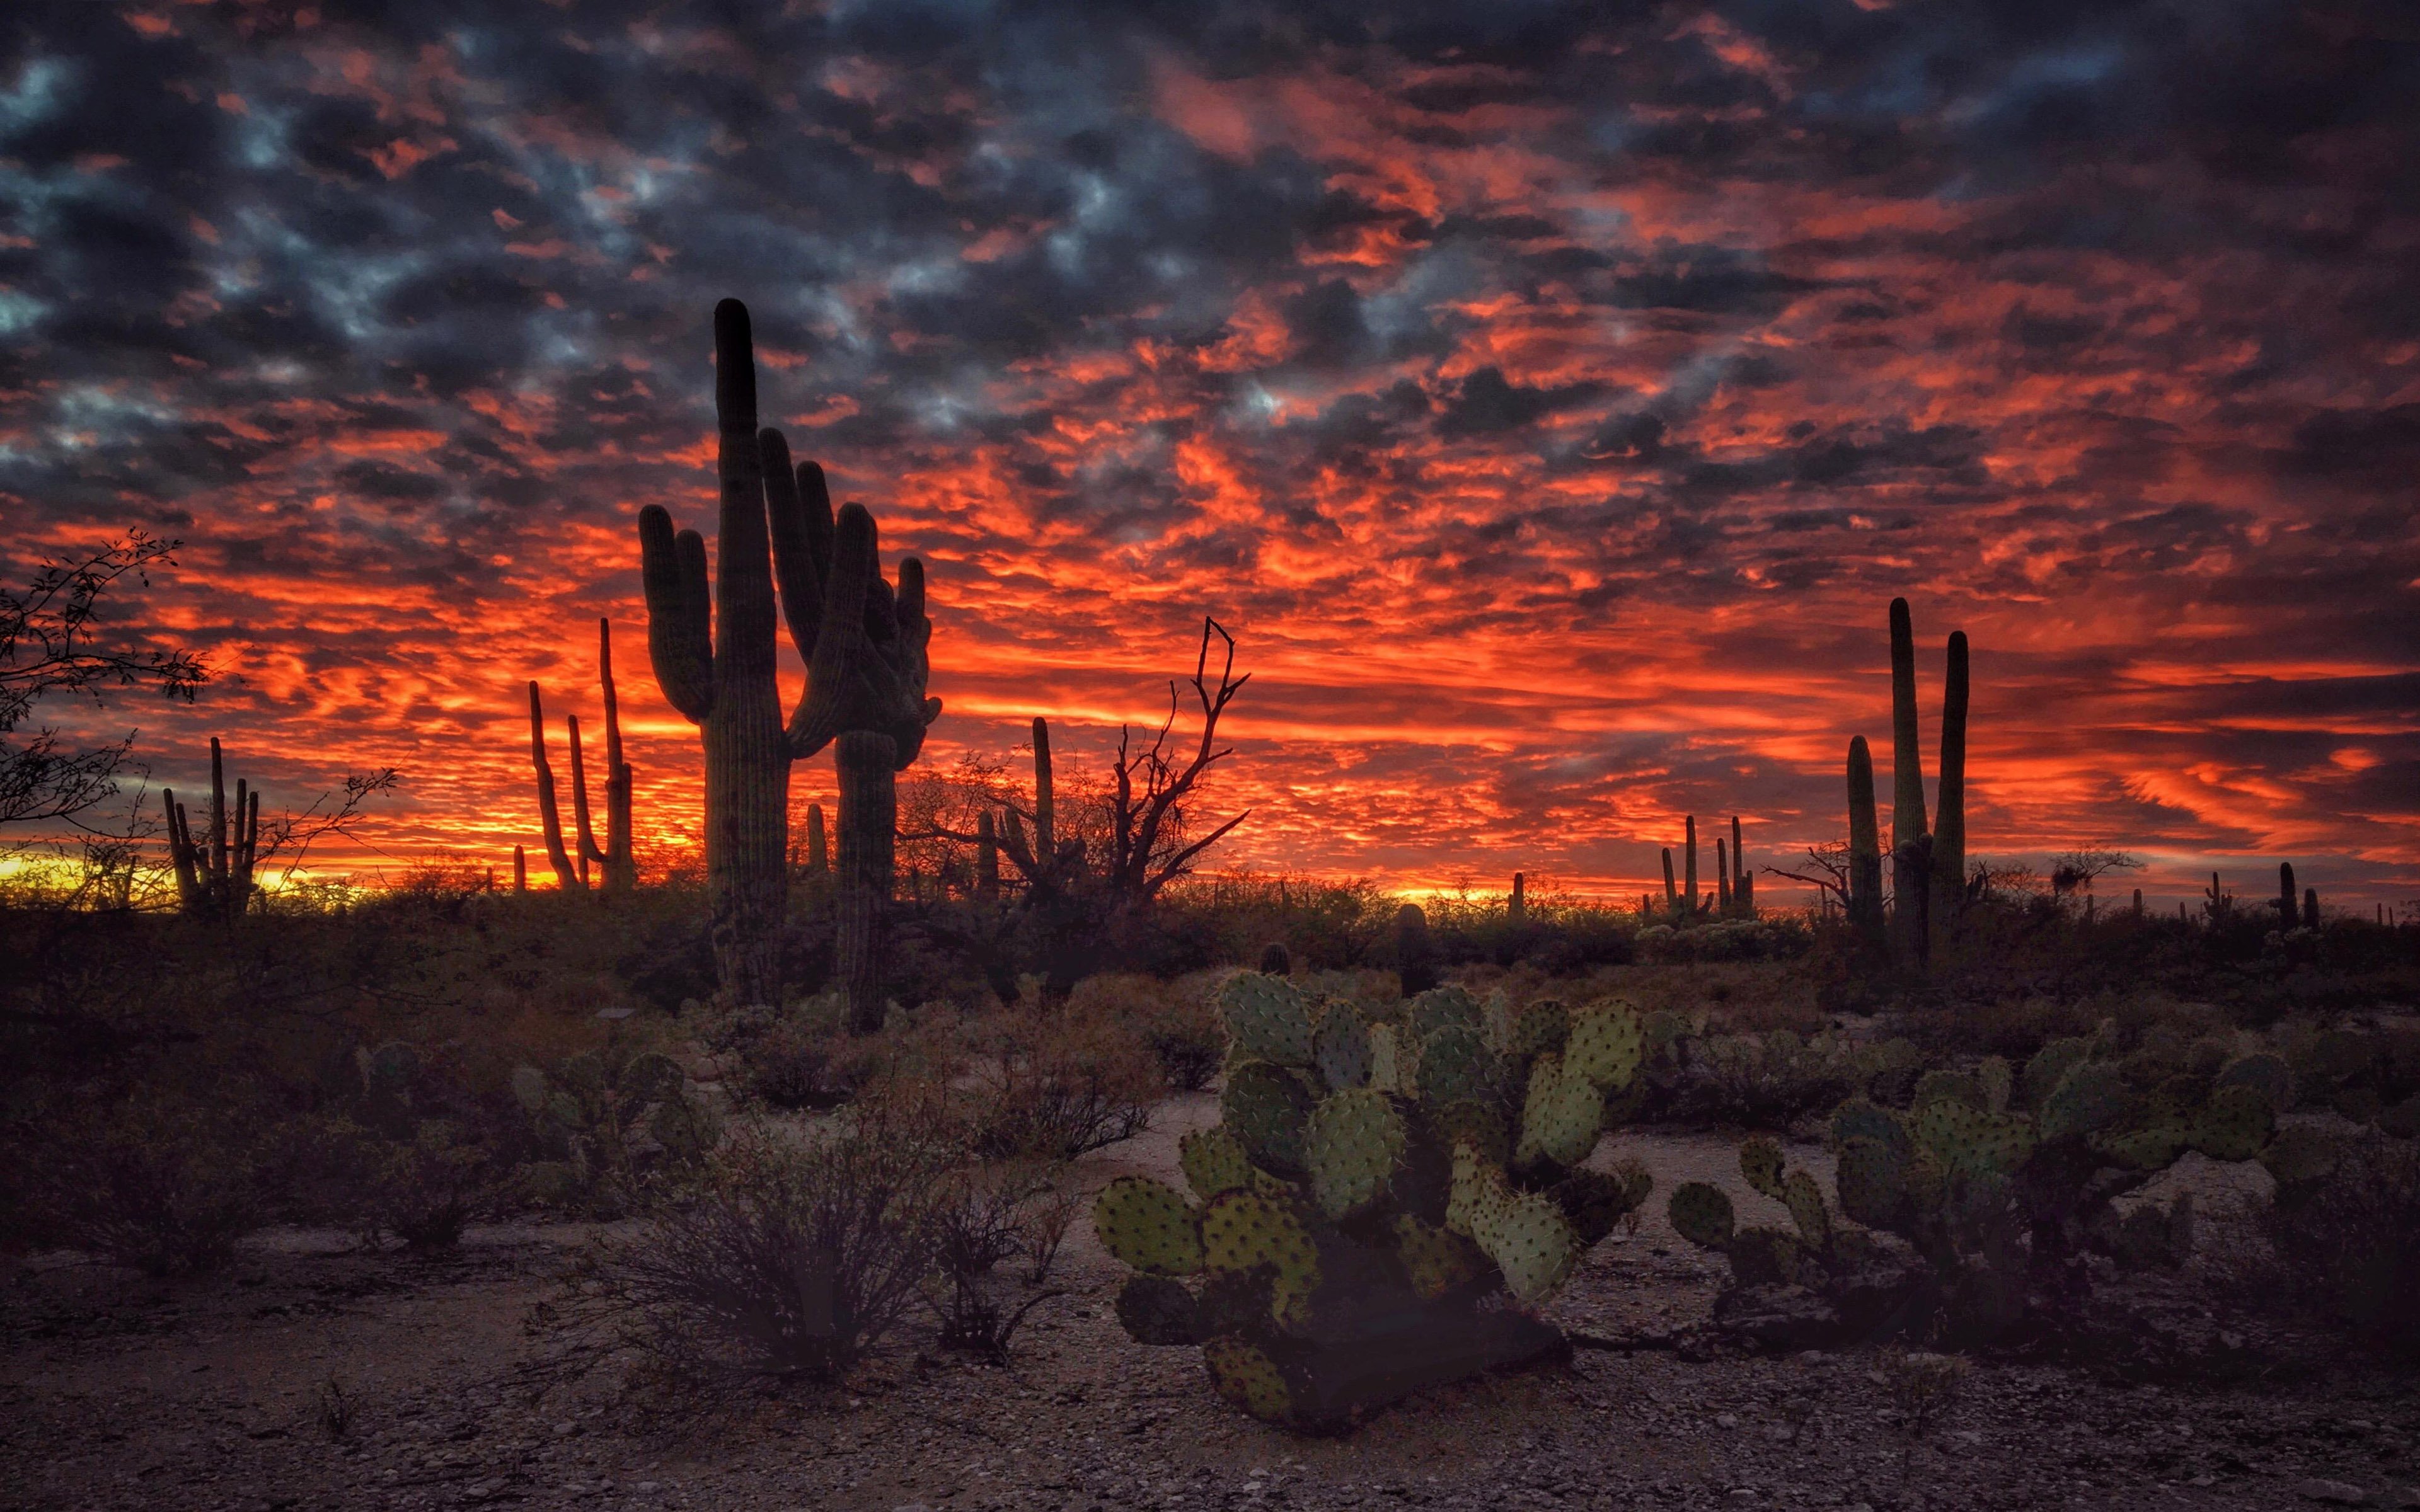 Tucson Arizona Sunset Flaming Sky Desert Landscape With Cactus